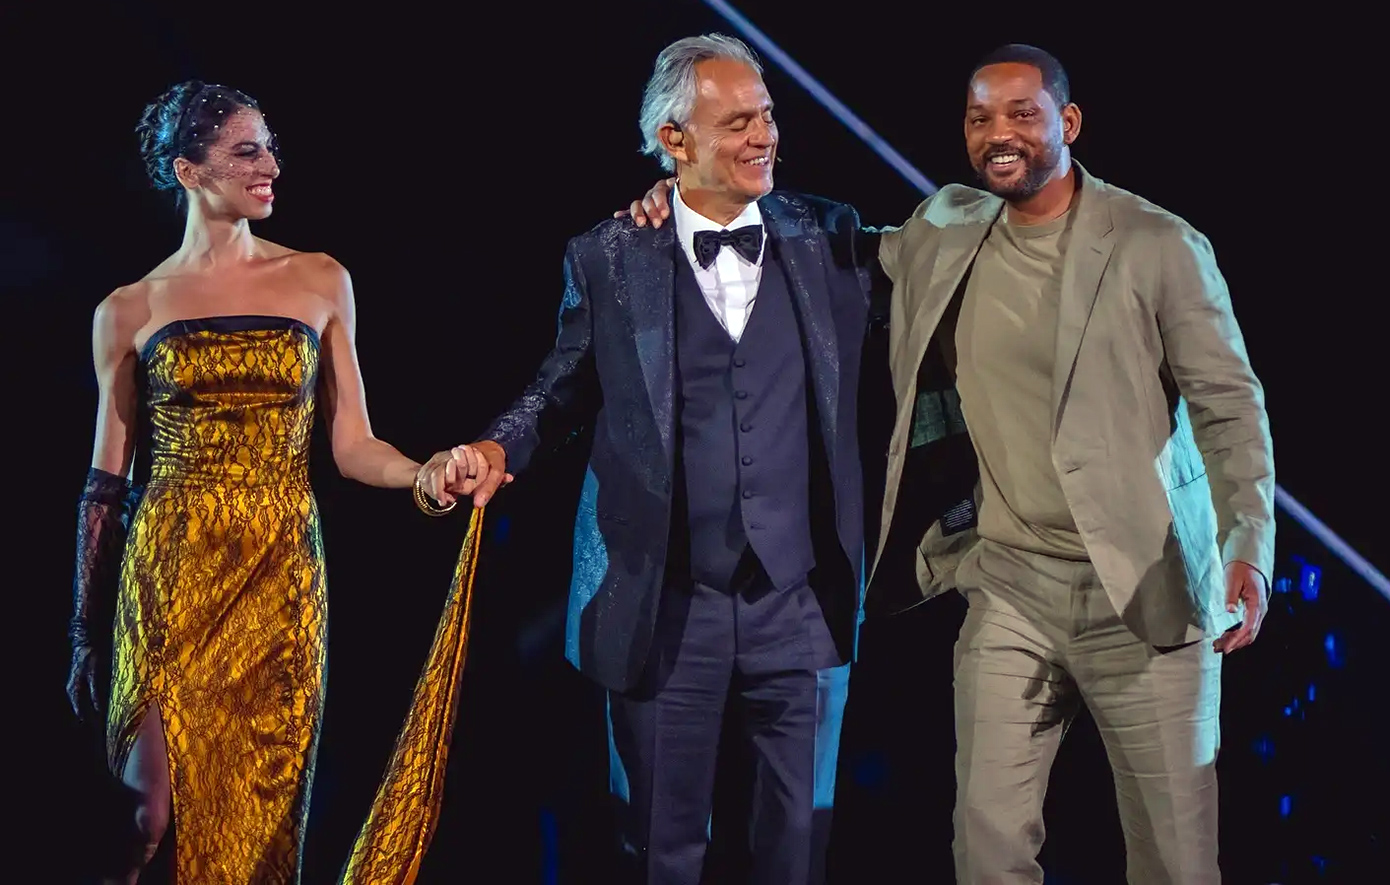 Όλο το Χόλιγουντ στη συναυλία του Αντρέα Μποτσέλι στην Ιταλία &#8211; Γουίλ Σμιθ, Ράσελ Κρόου και Τζόνι Ντεπ ανέβηκαν στη σκηνή